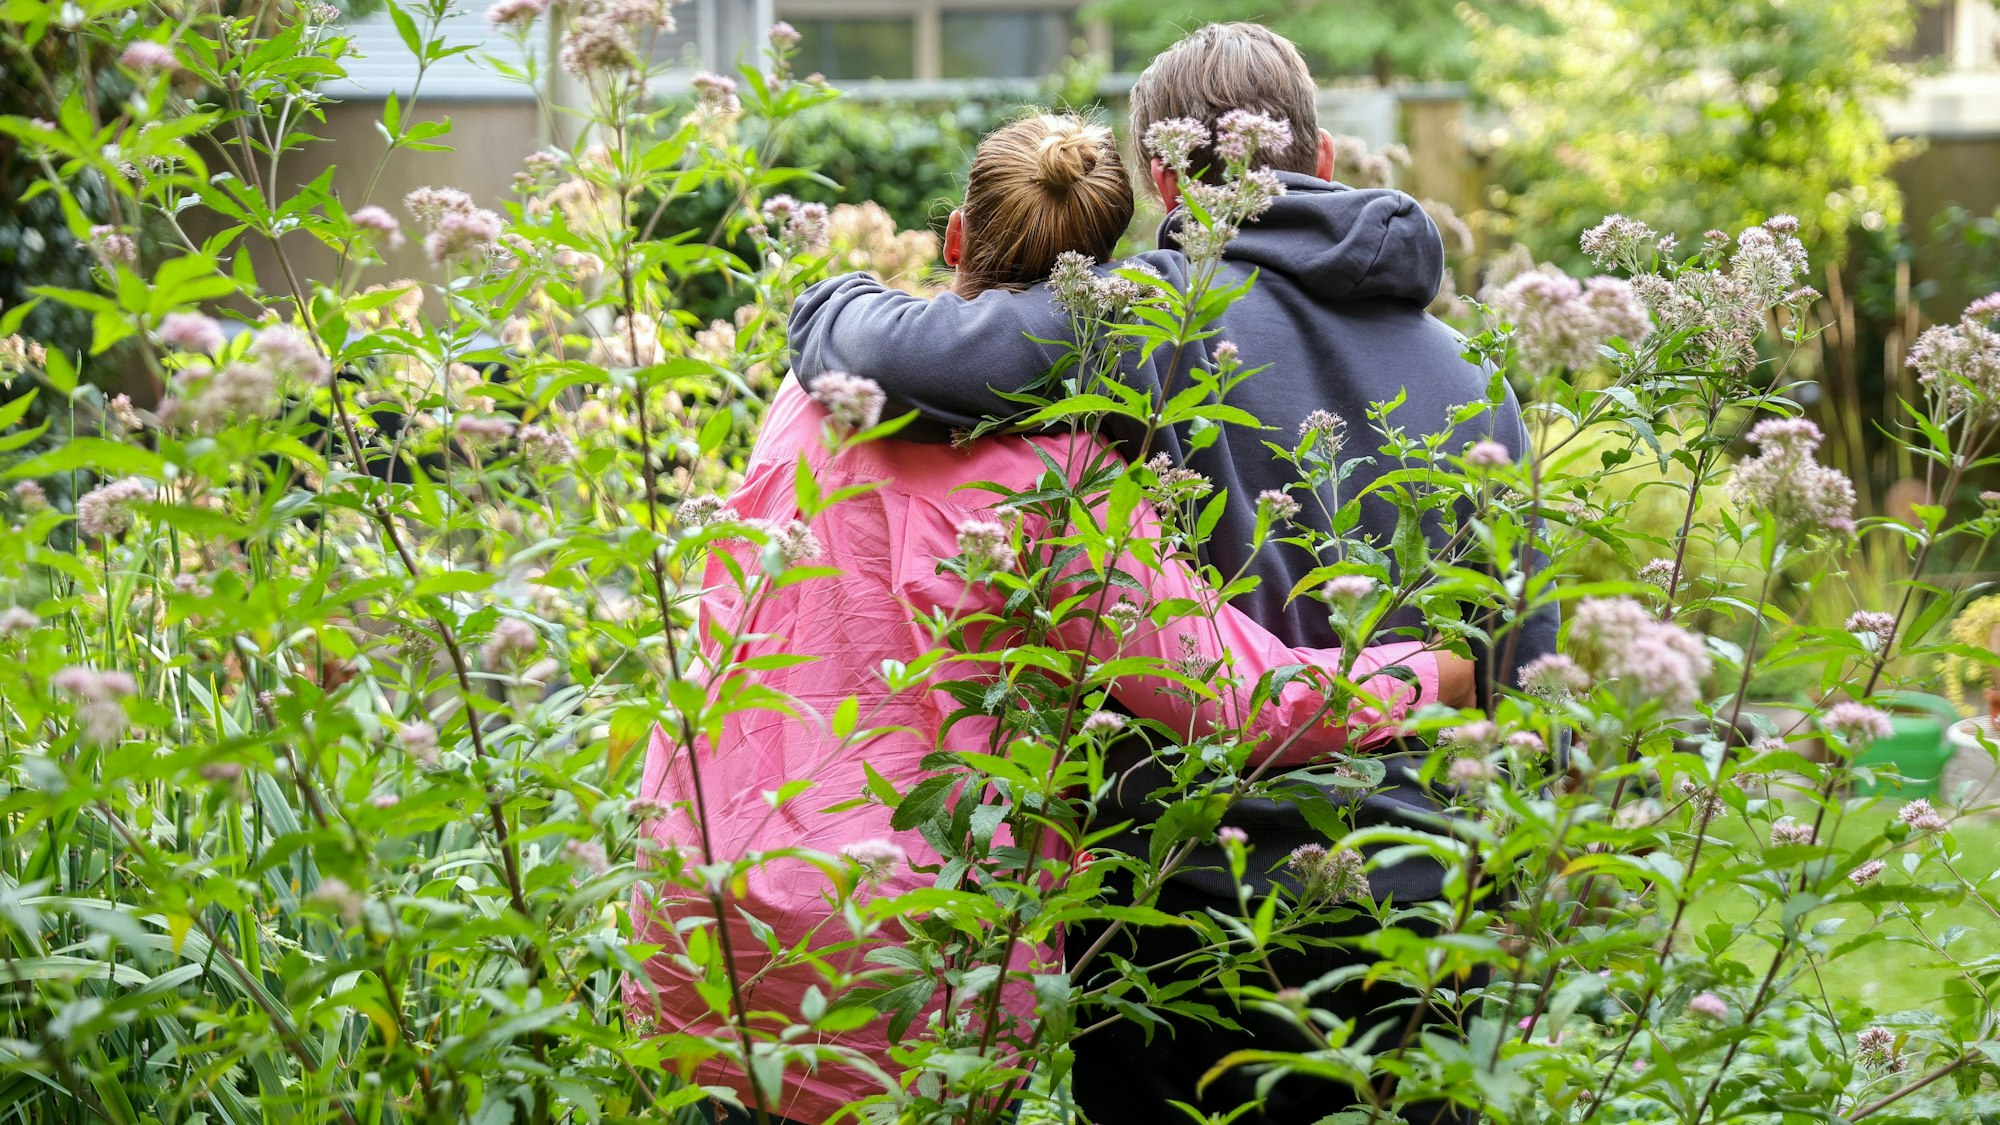 Svanja und Johann stehen in einem Garten, sie stehen mit dem Rücken zur Kamera und haben je einen Arm umeinander gelegt.